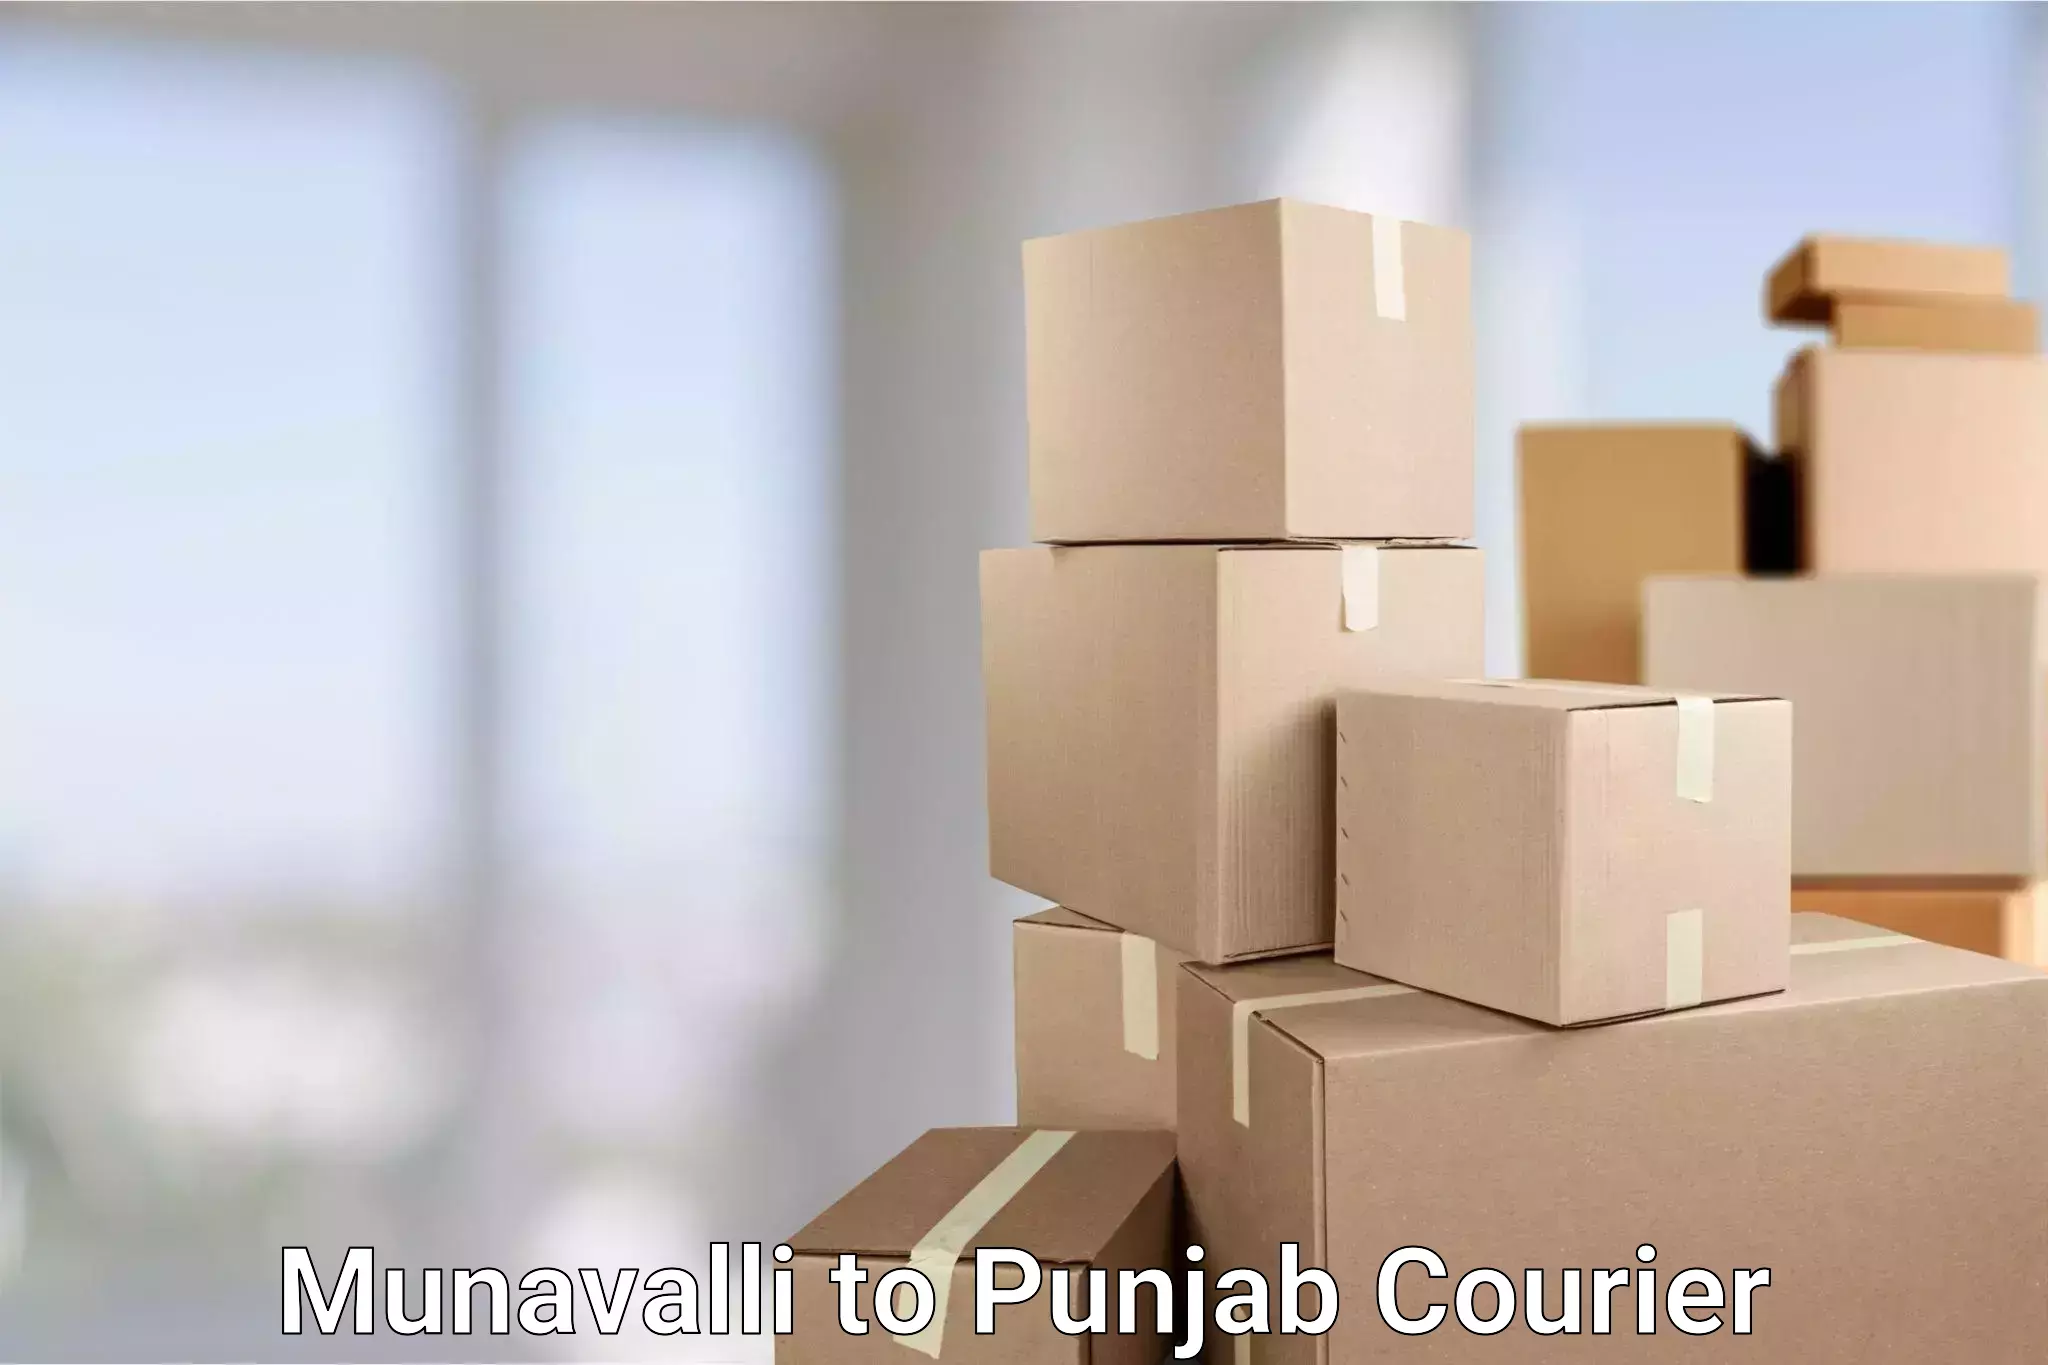 24-hour courier services in Munavalli to Nawanshahr